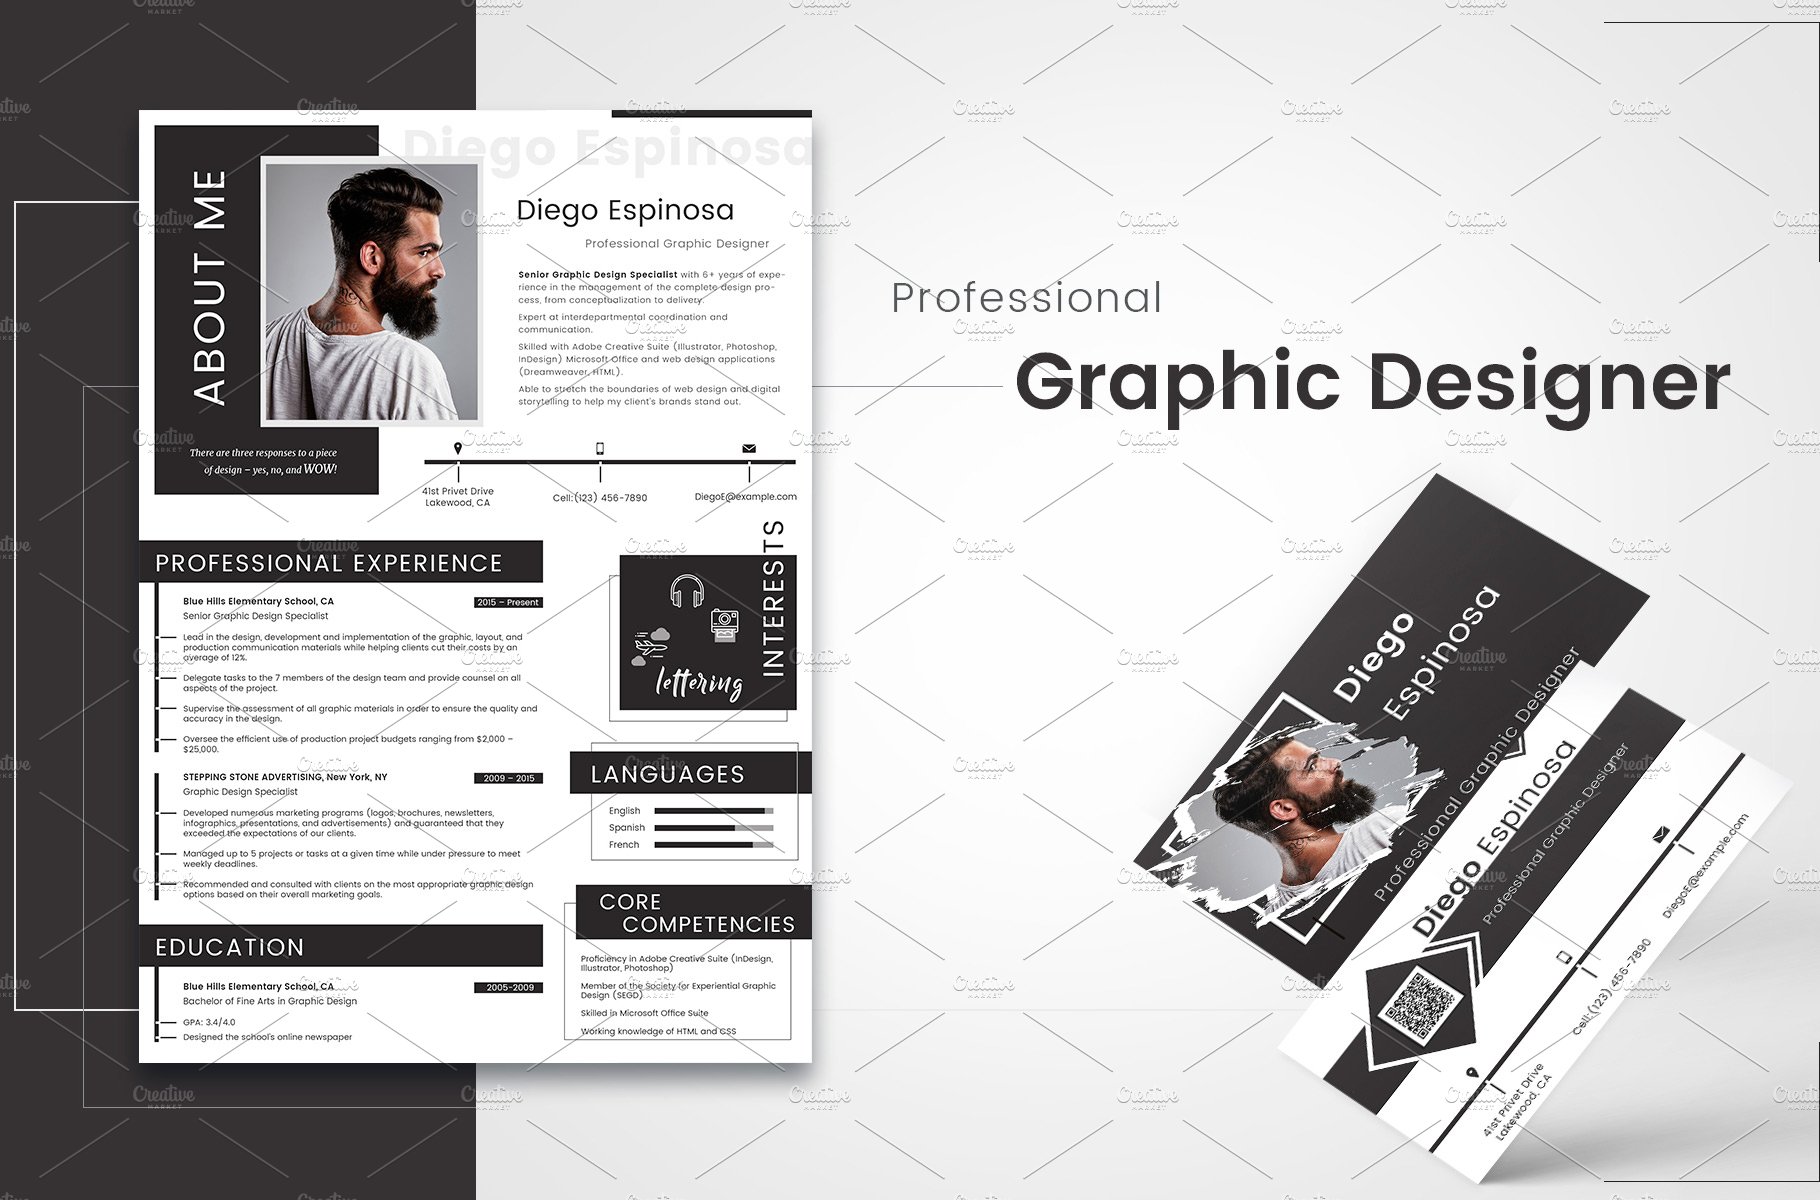 Graphic Designer Resume Portfolio preview image.